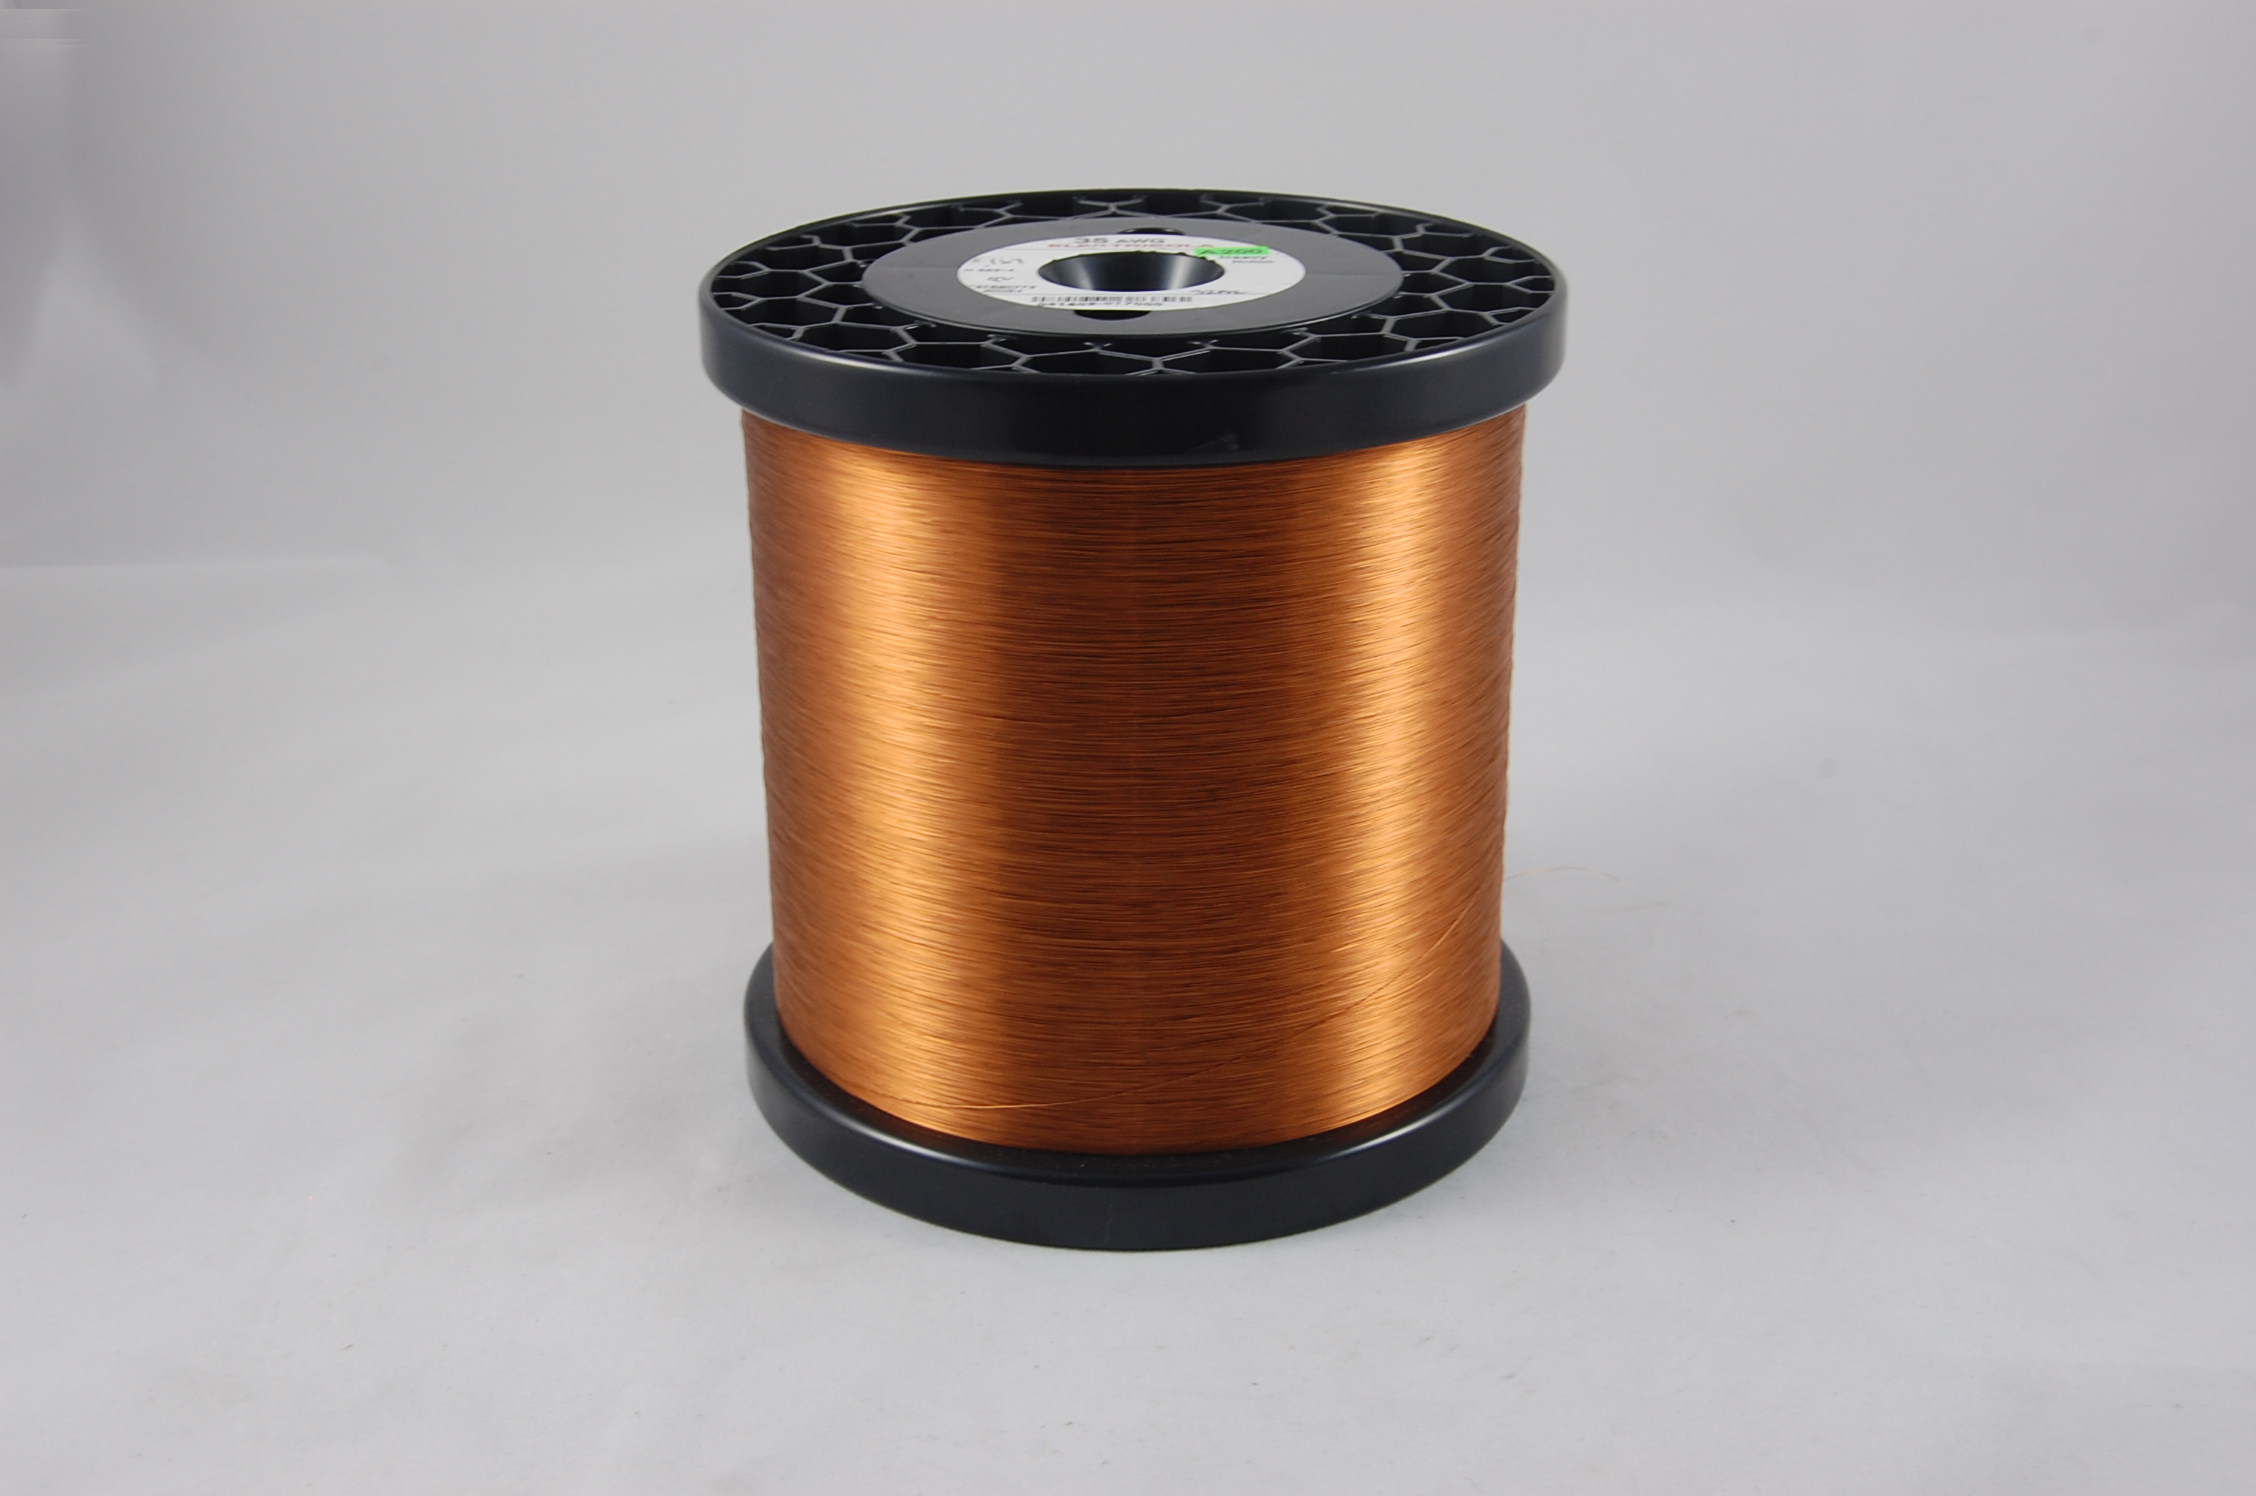 #40 Heavy Amidester 200 Round MW 74 Copper Magnet Wire 200°C, copper,  14 LB 6" x 6" spool (average wght.)